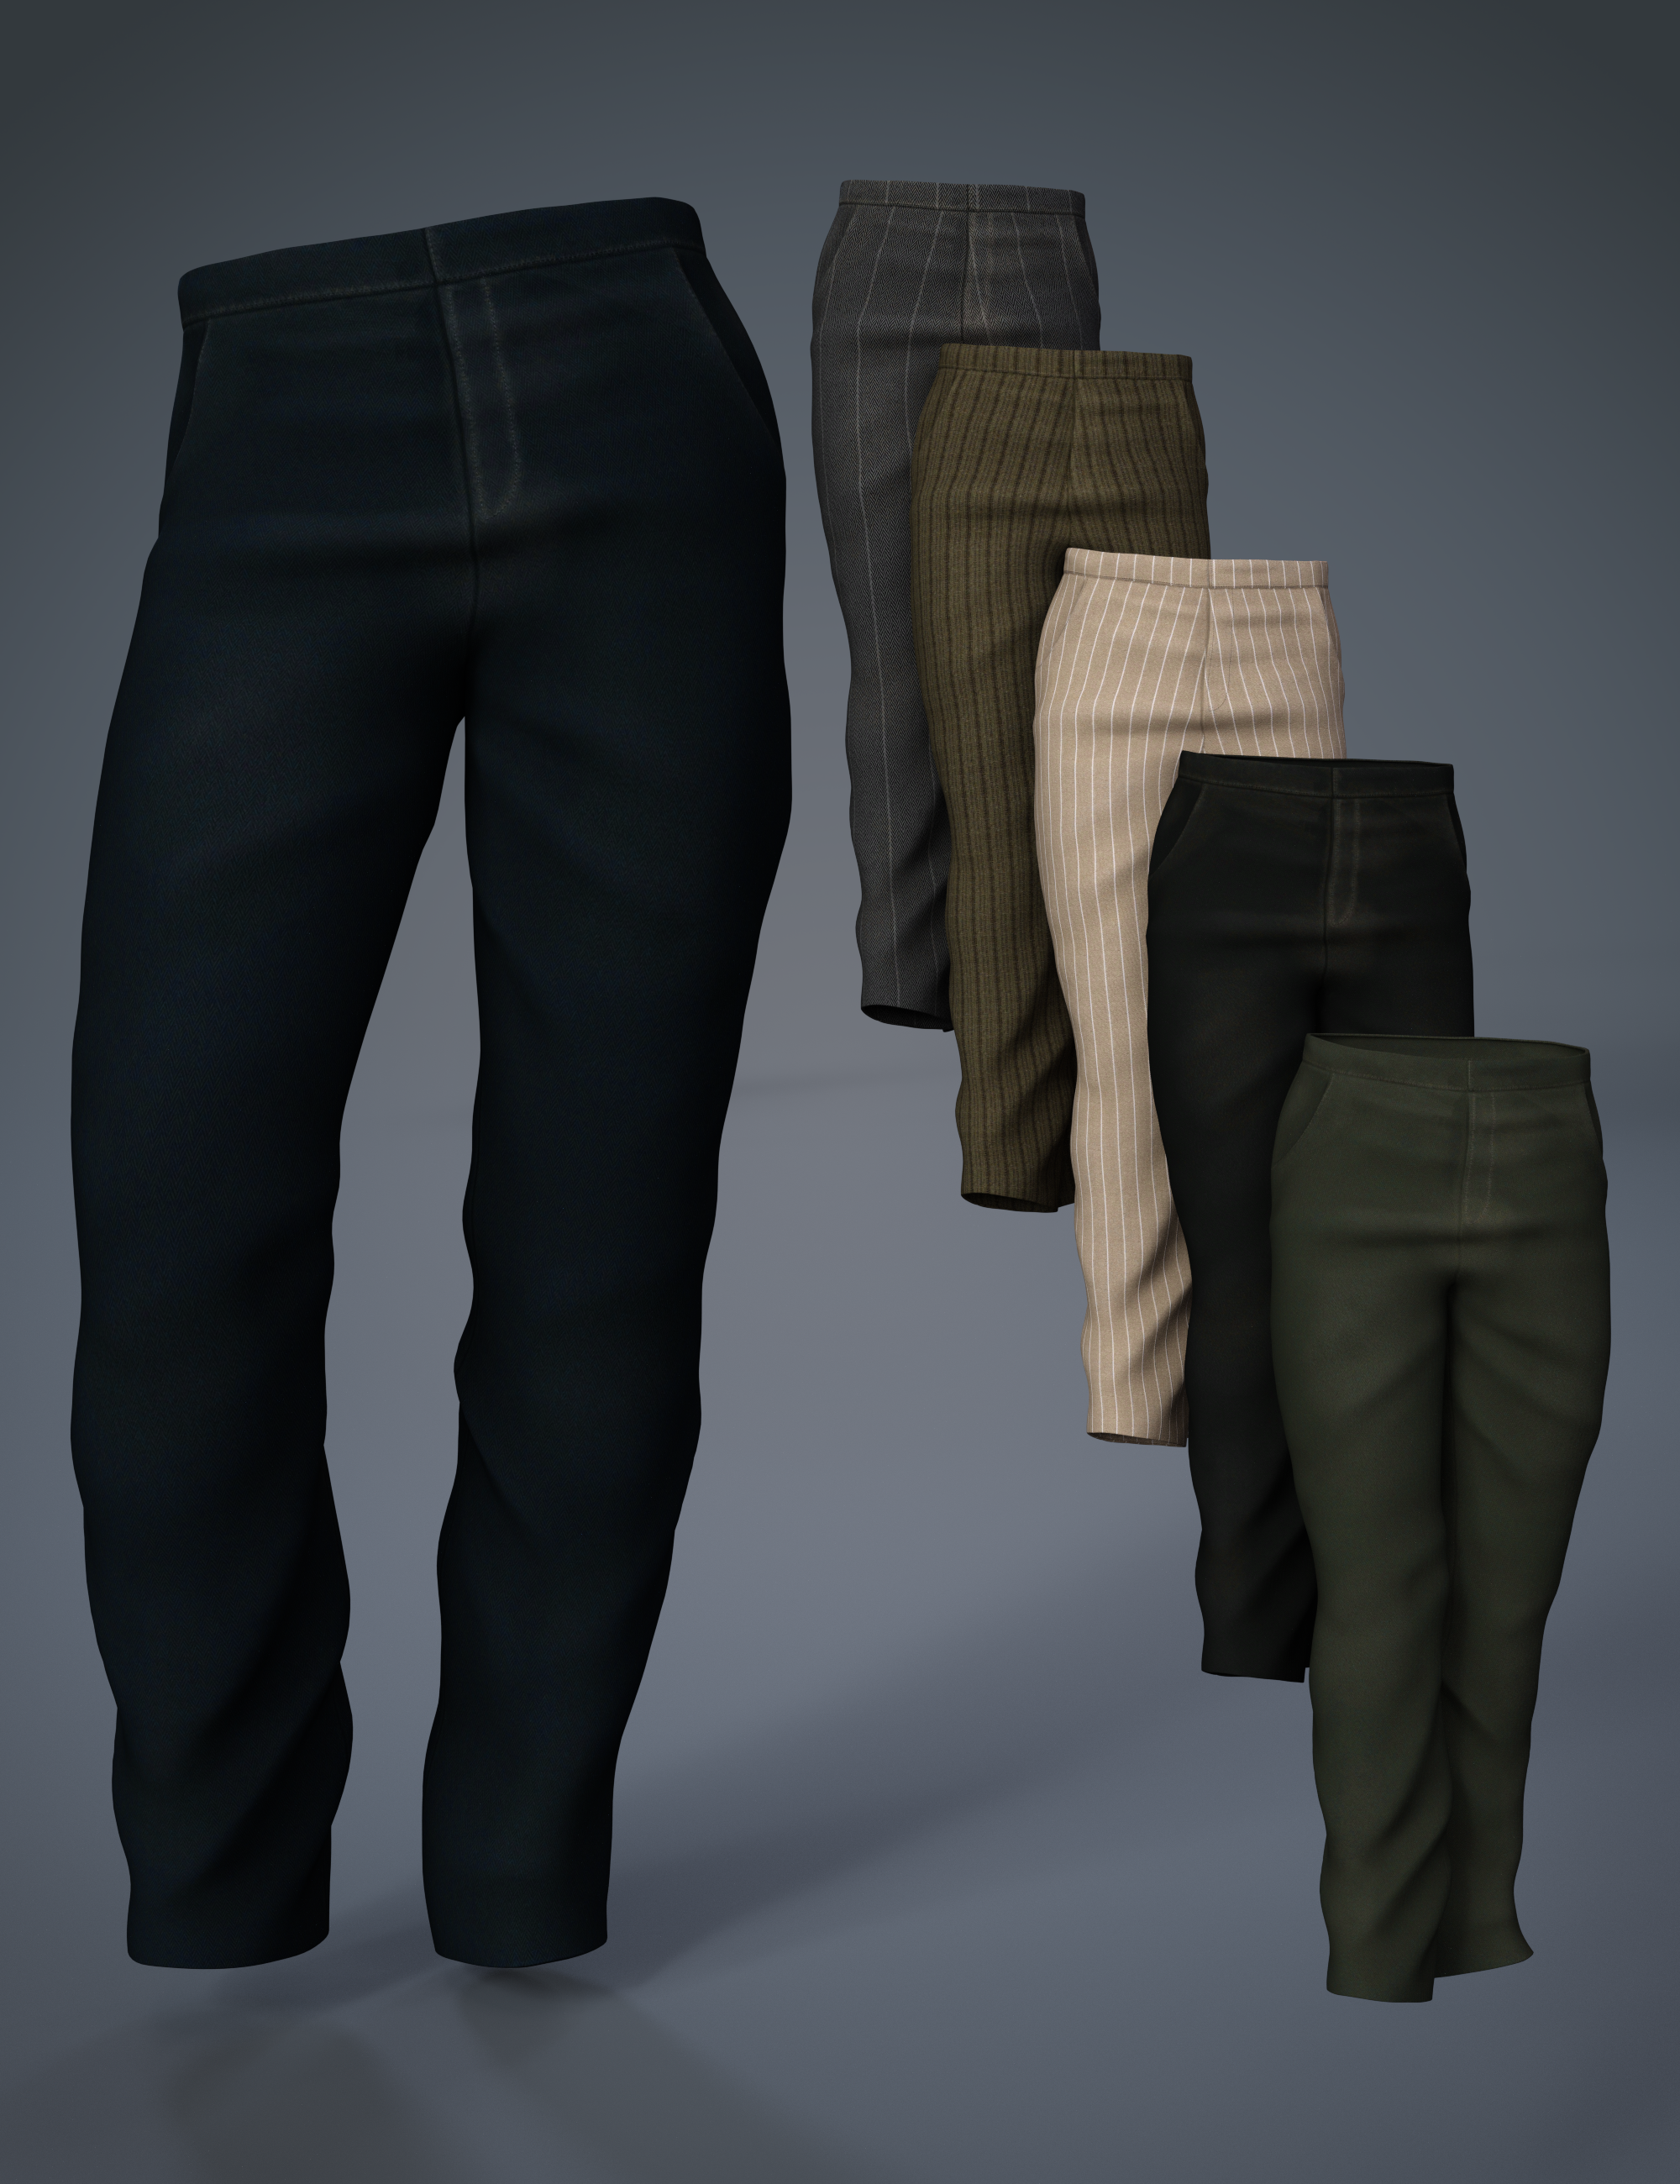 Ranch dForce Pants for Genesis 8 Males by: MadaArien, 3D Models by Daz 3D